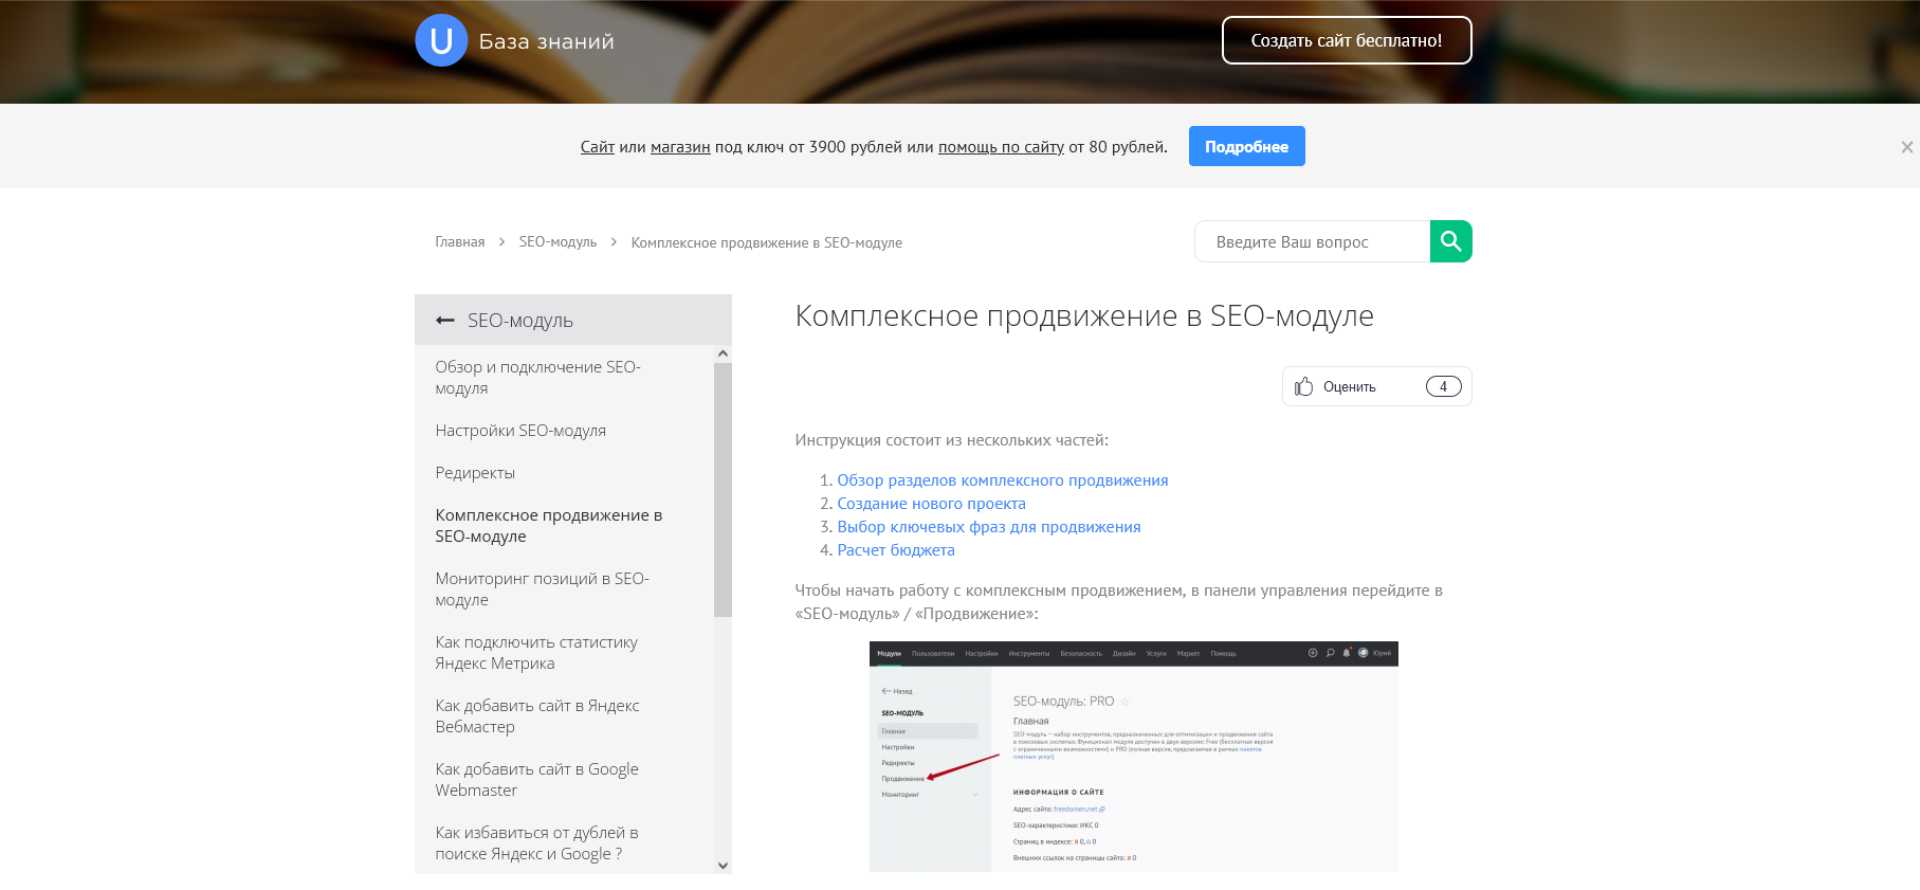 Запуск рекламы сразу на нескольких площадках Яндекса и Google